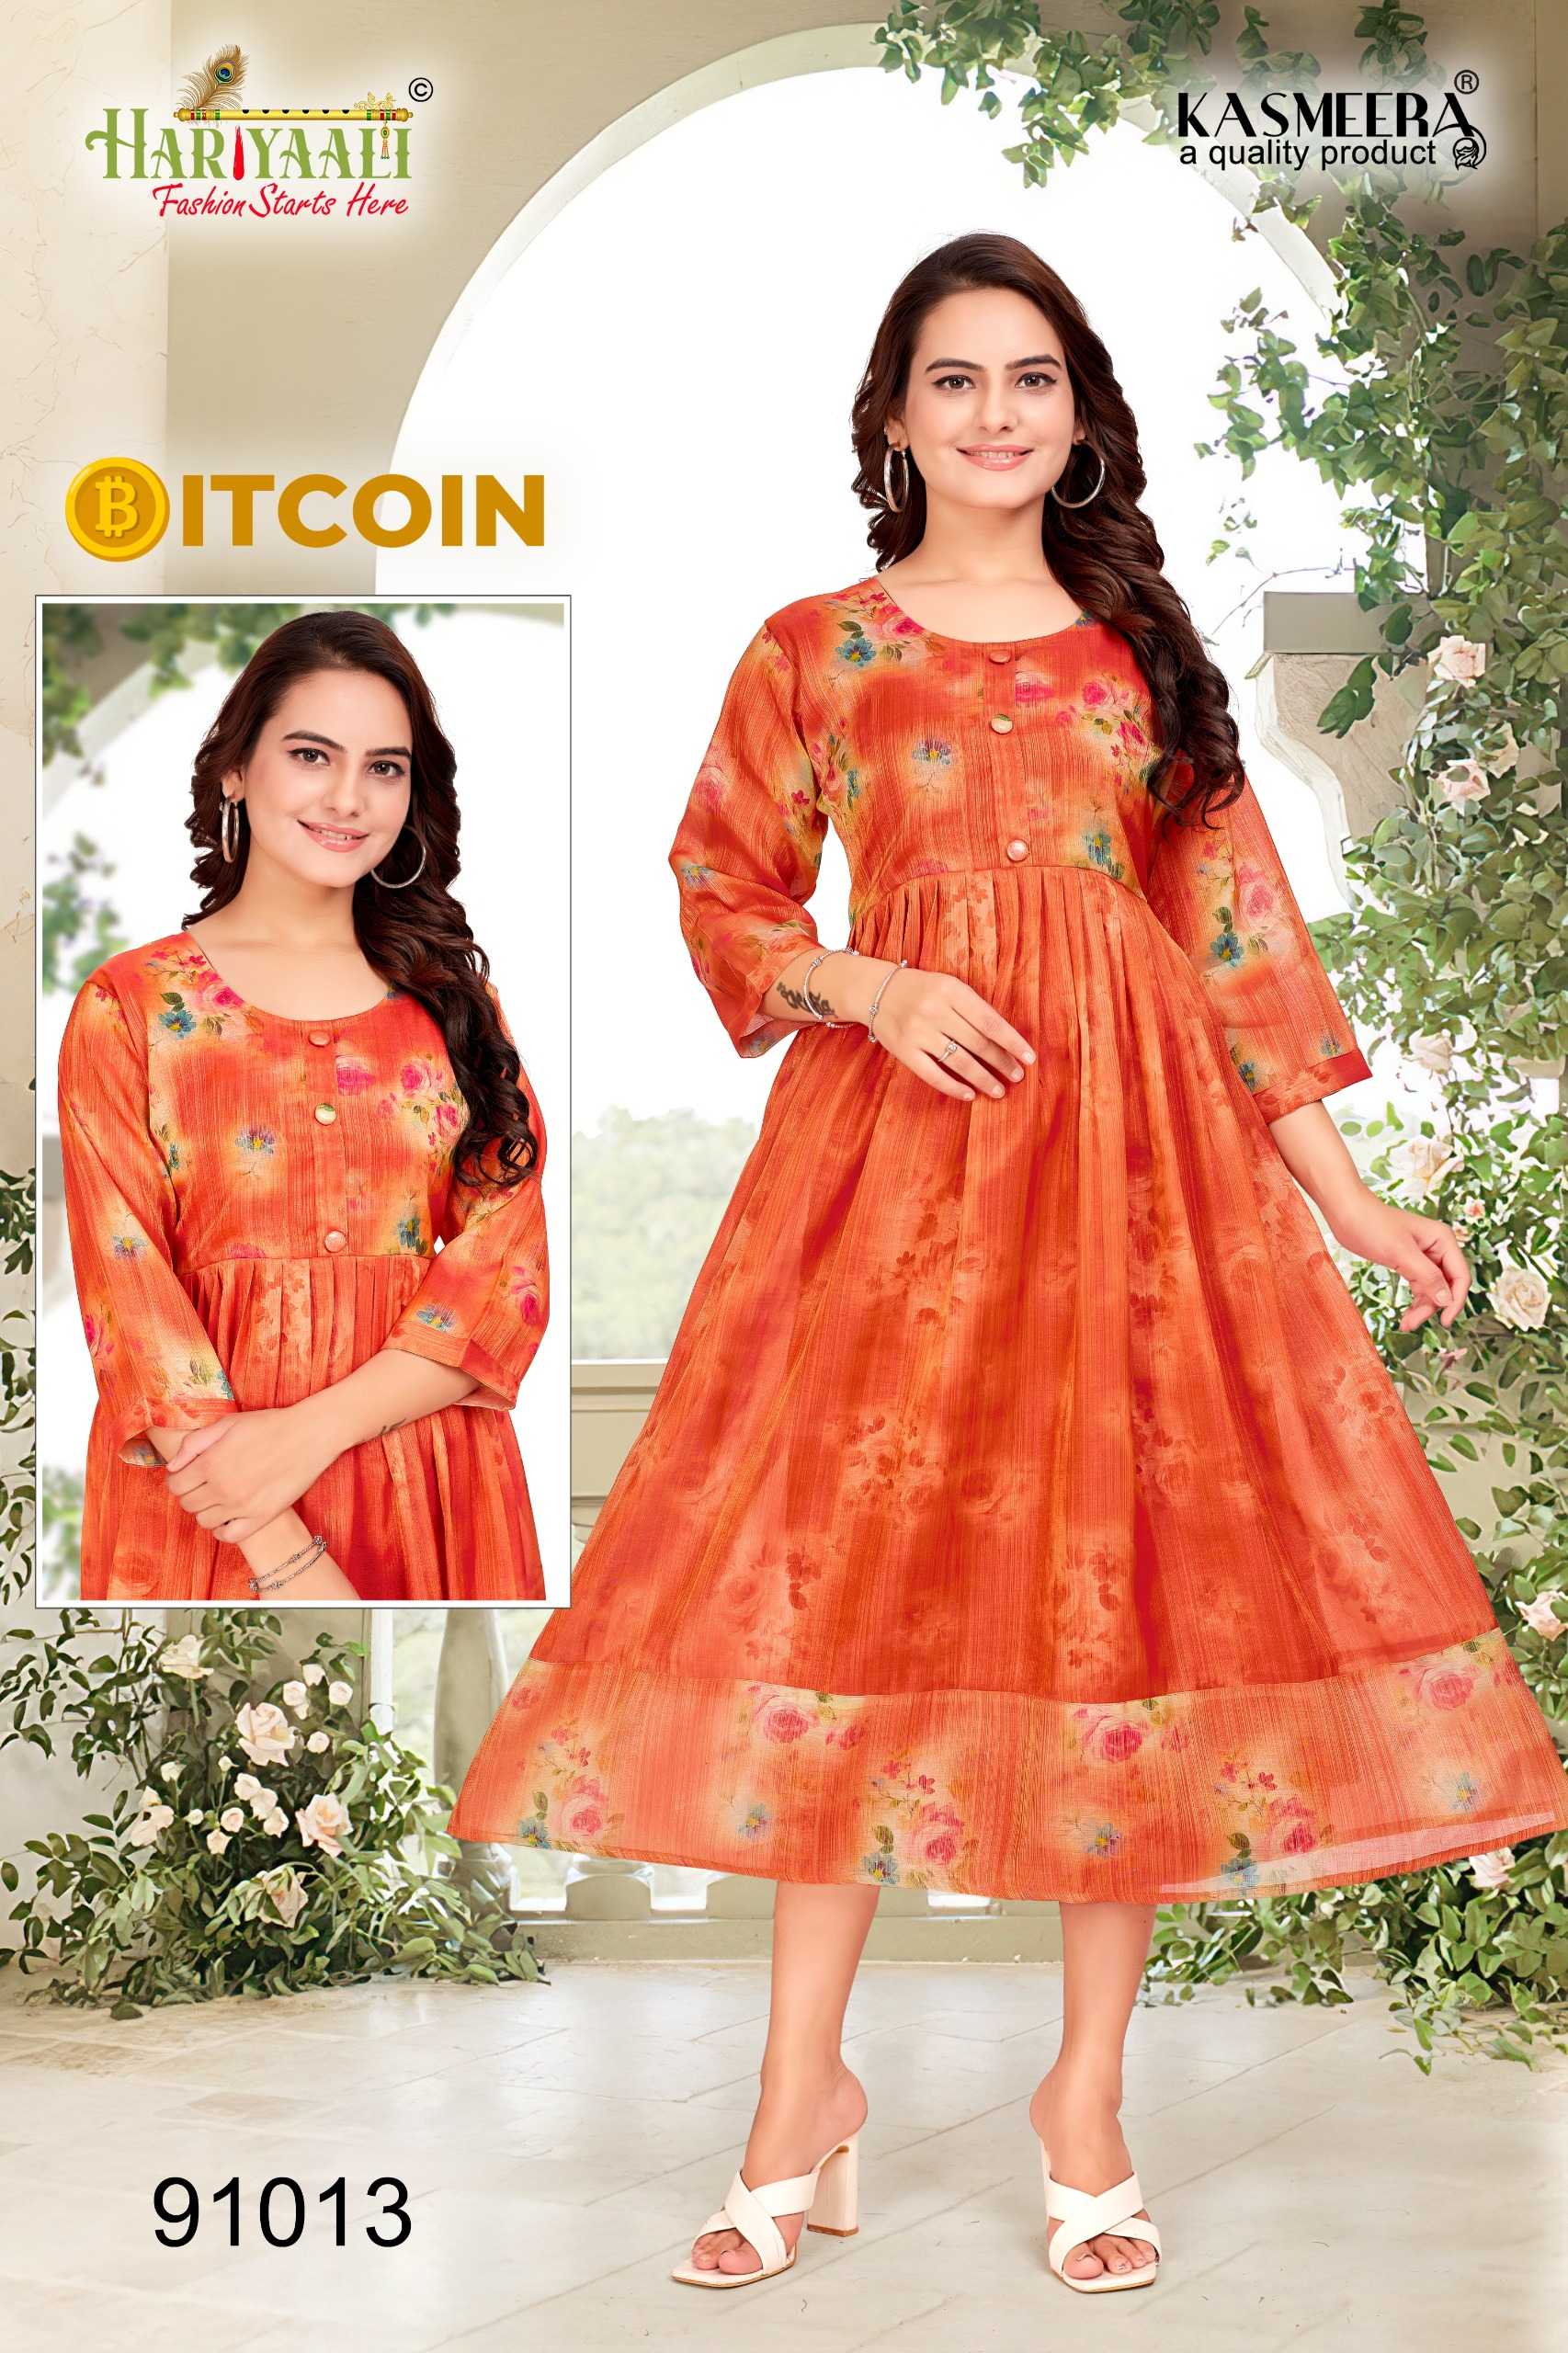 hariyaali bitcoin vol 2 latest wear readymade kurti collection combo set 